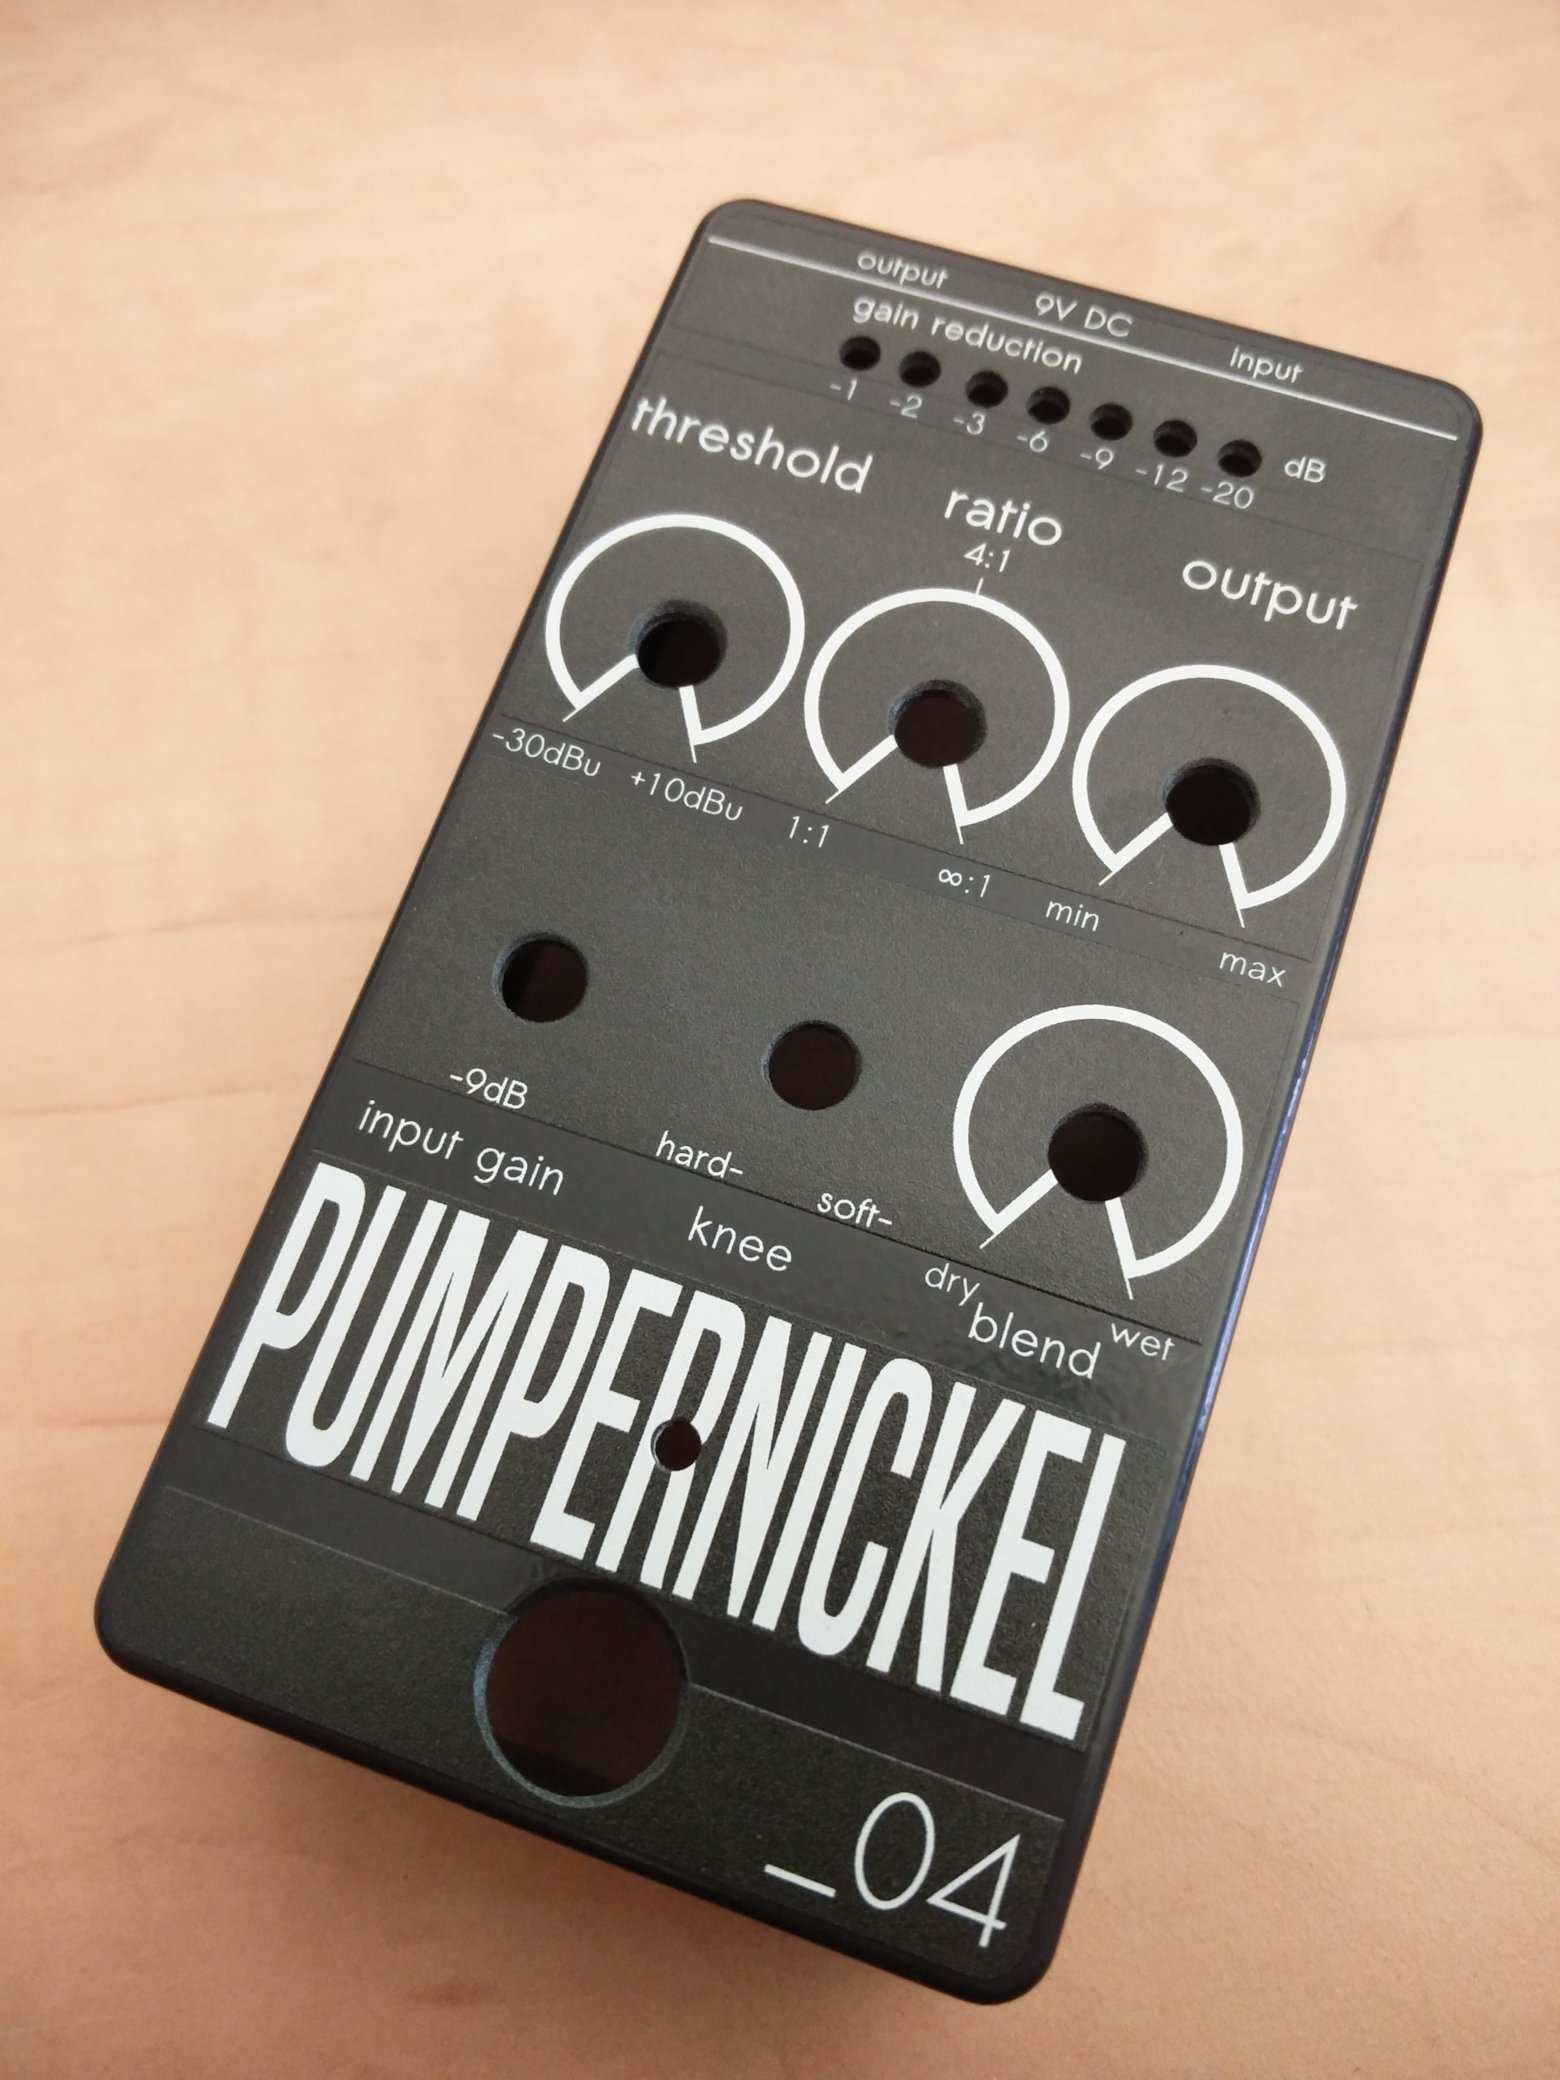 pumpernickel_prototyp_01-jpg.79410